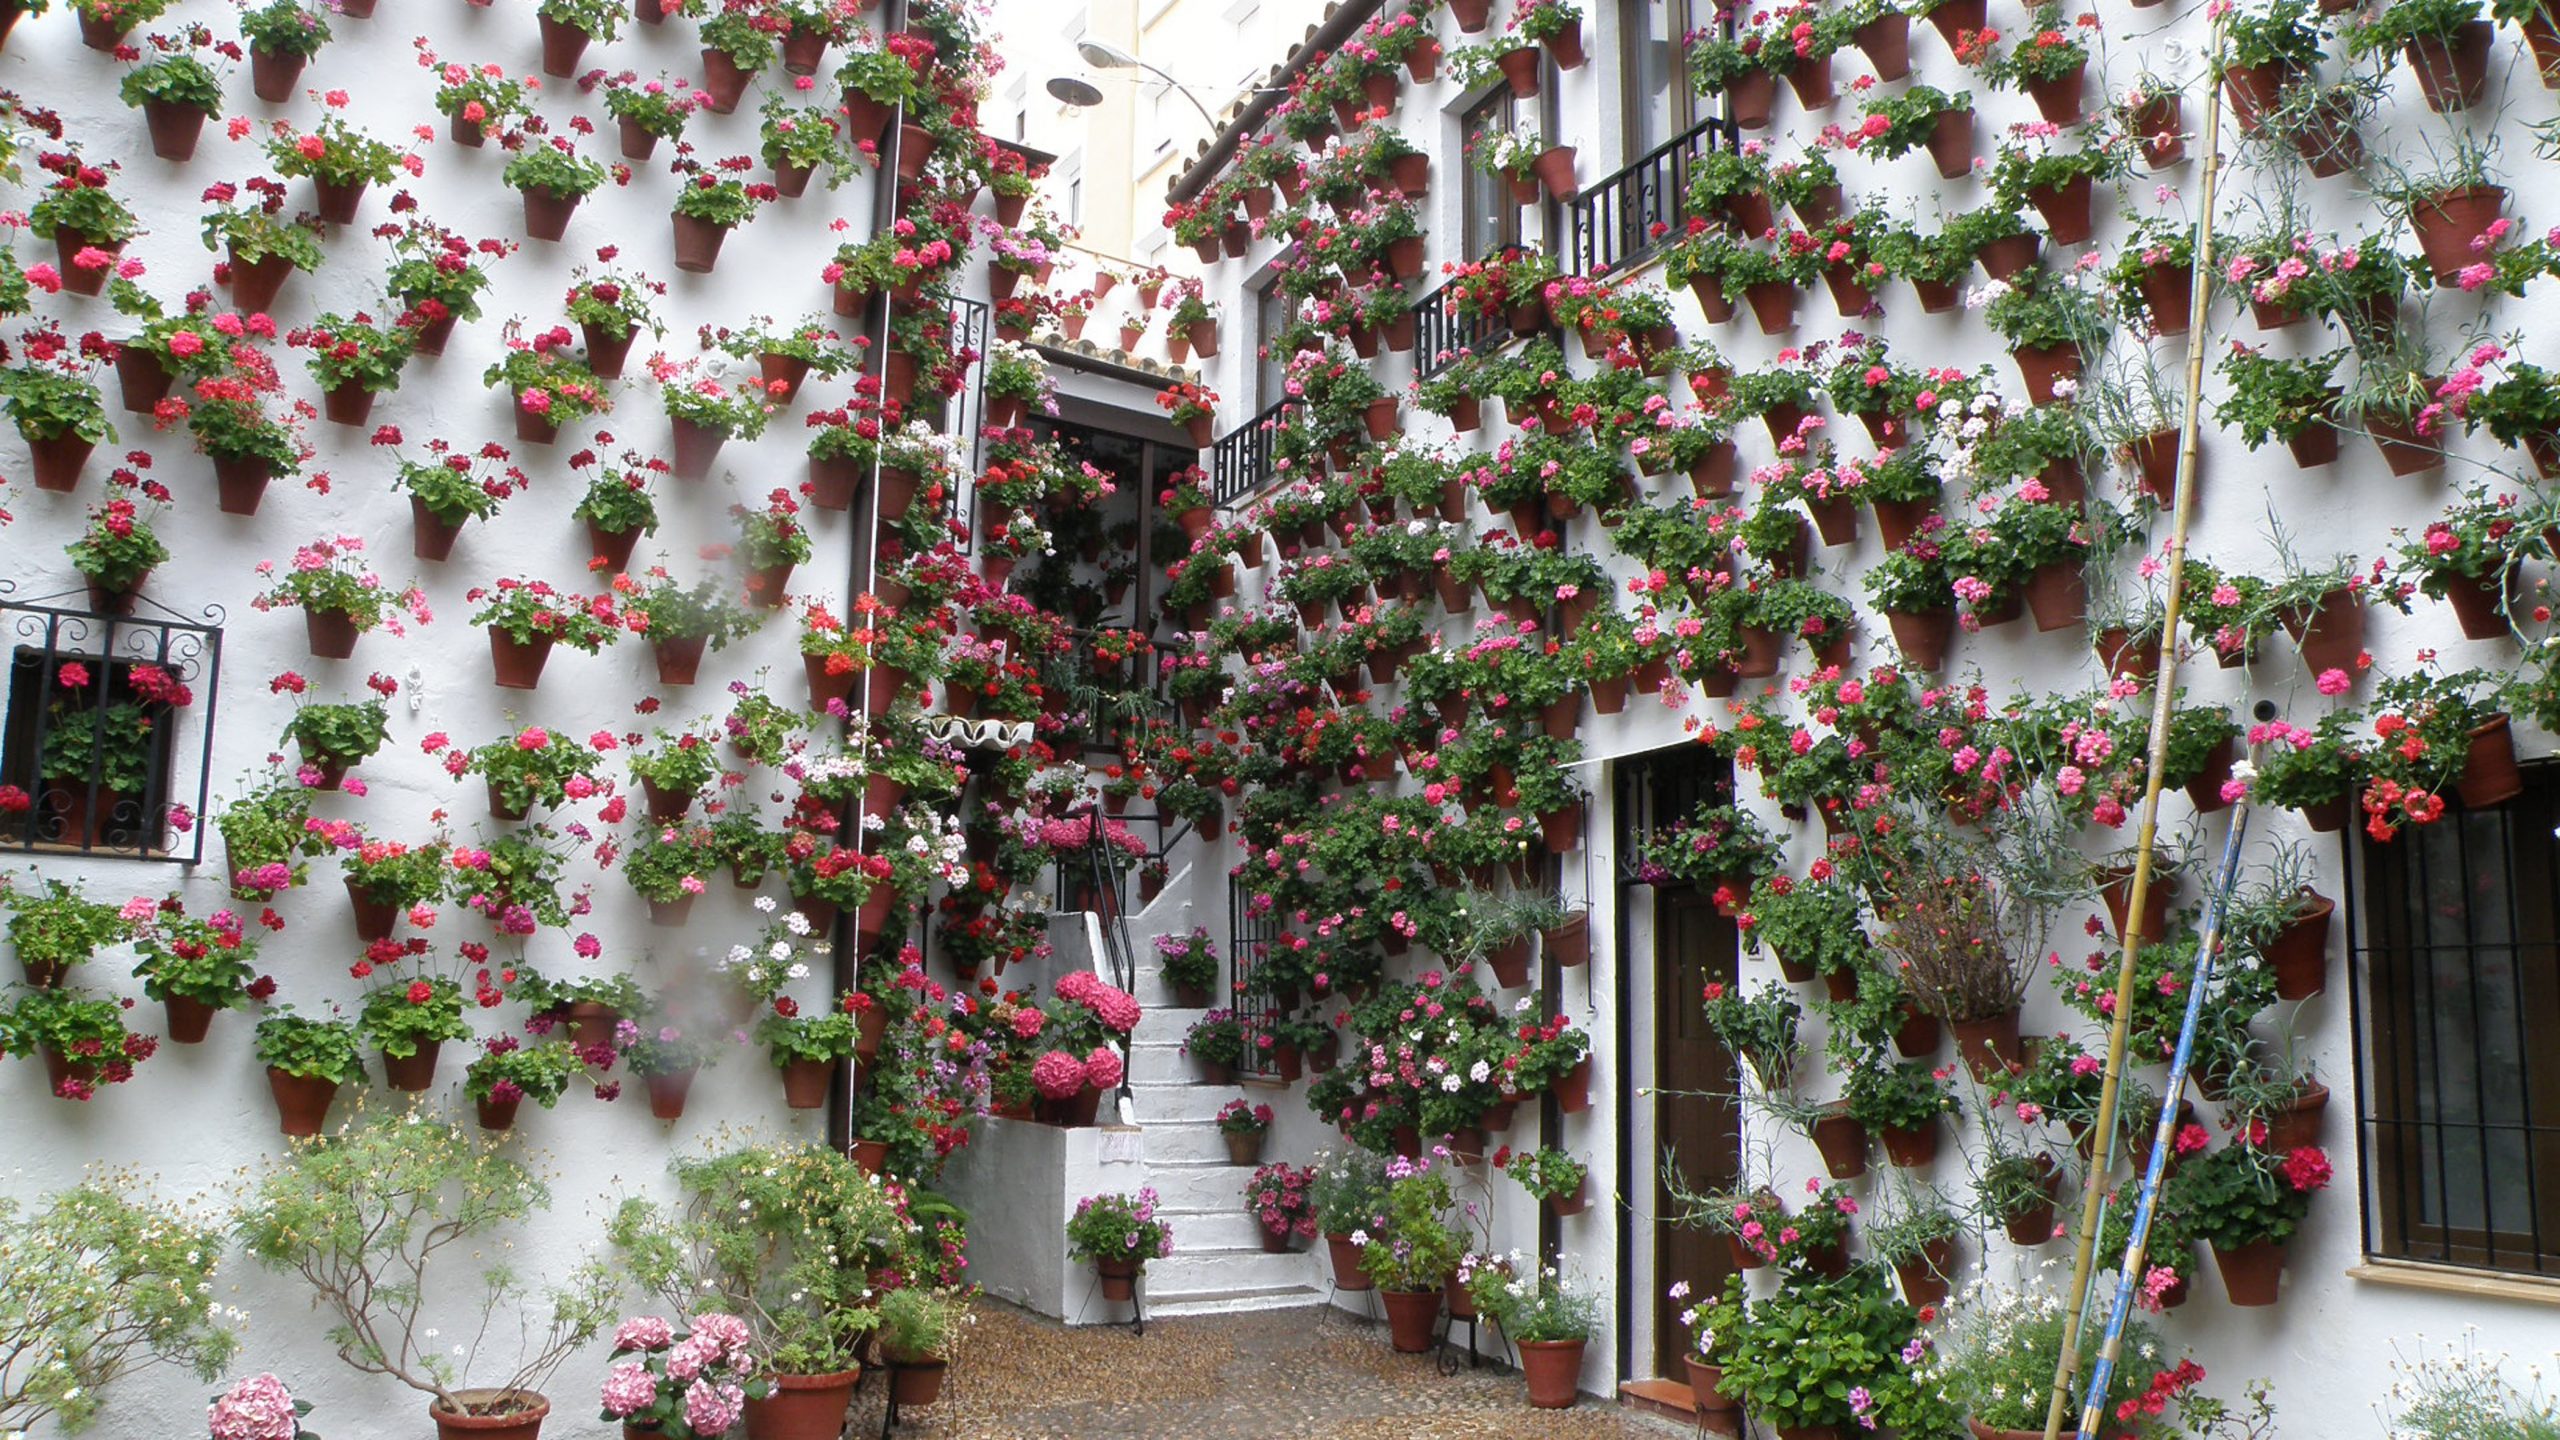 Les patios décorés au printemps en Espagne